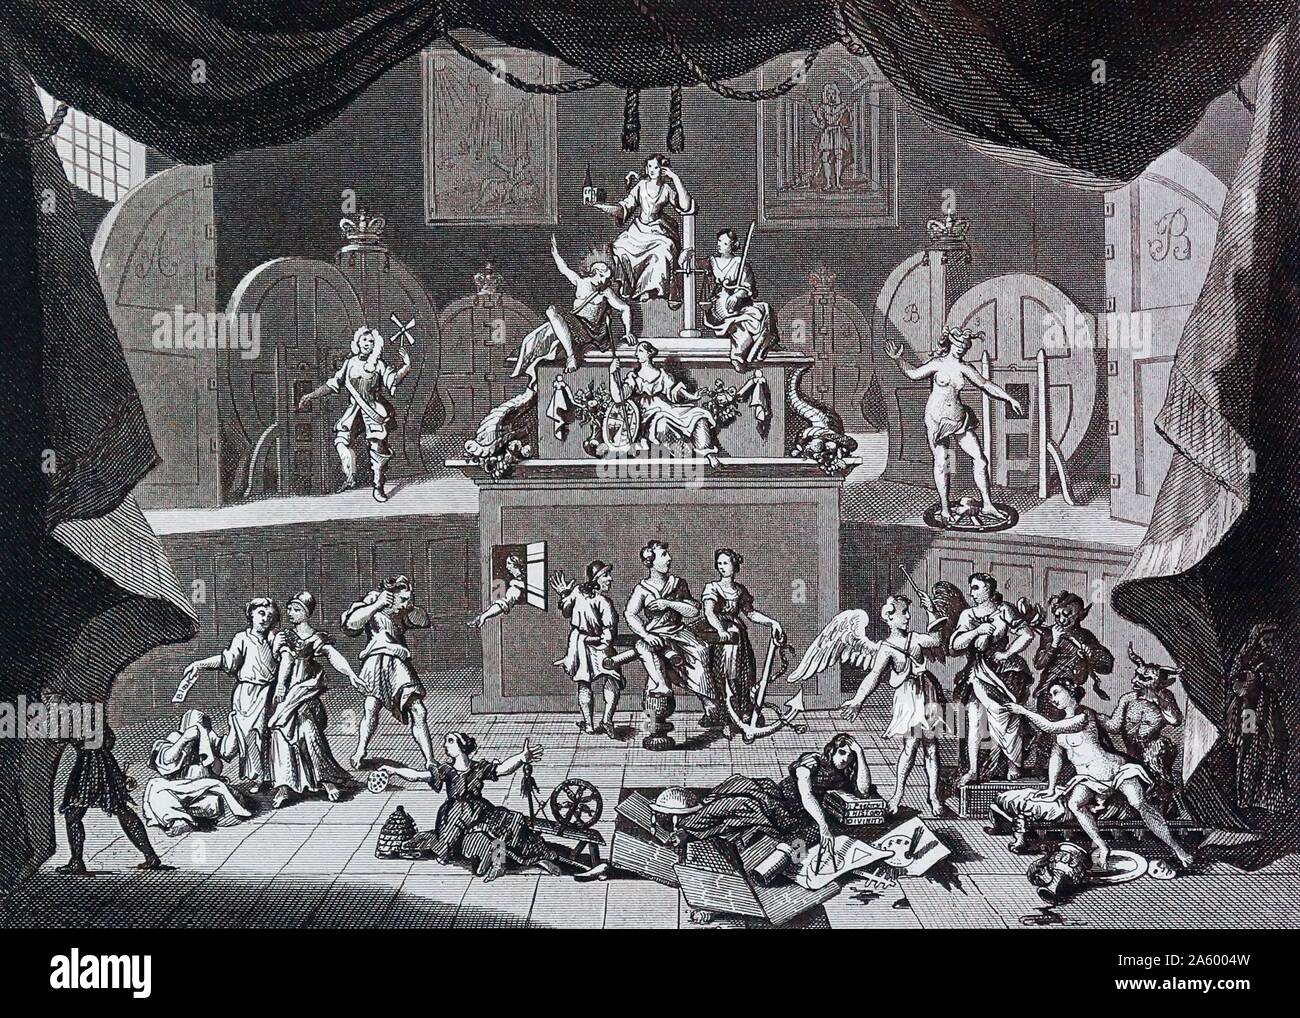 Die Lotterie. von William Hogarth (1697-1764). Englischer Maler, Grafiker, bildhafte Satiriker. Stockfoto